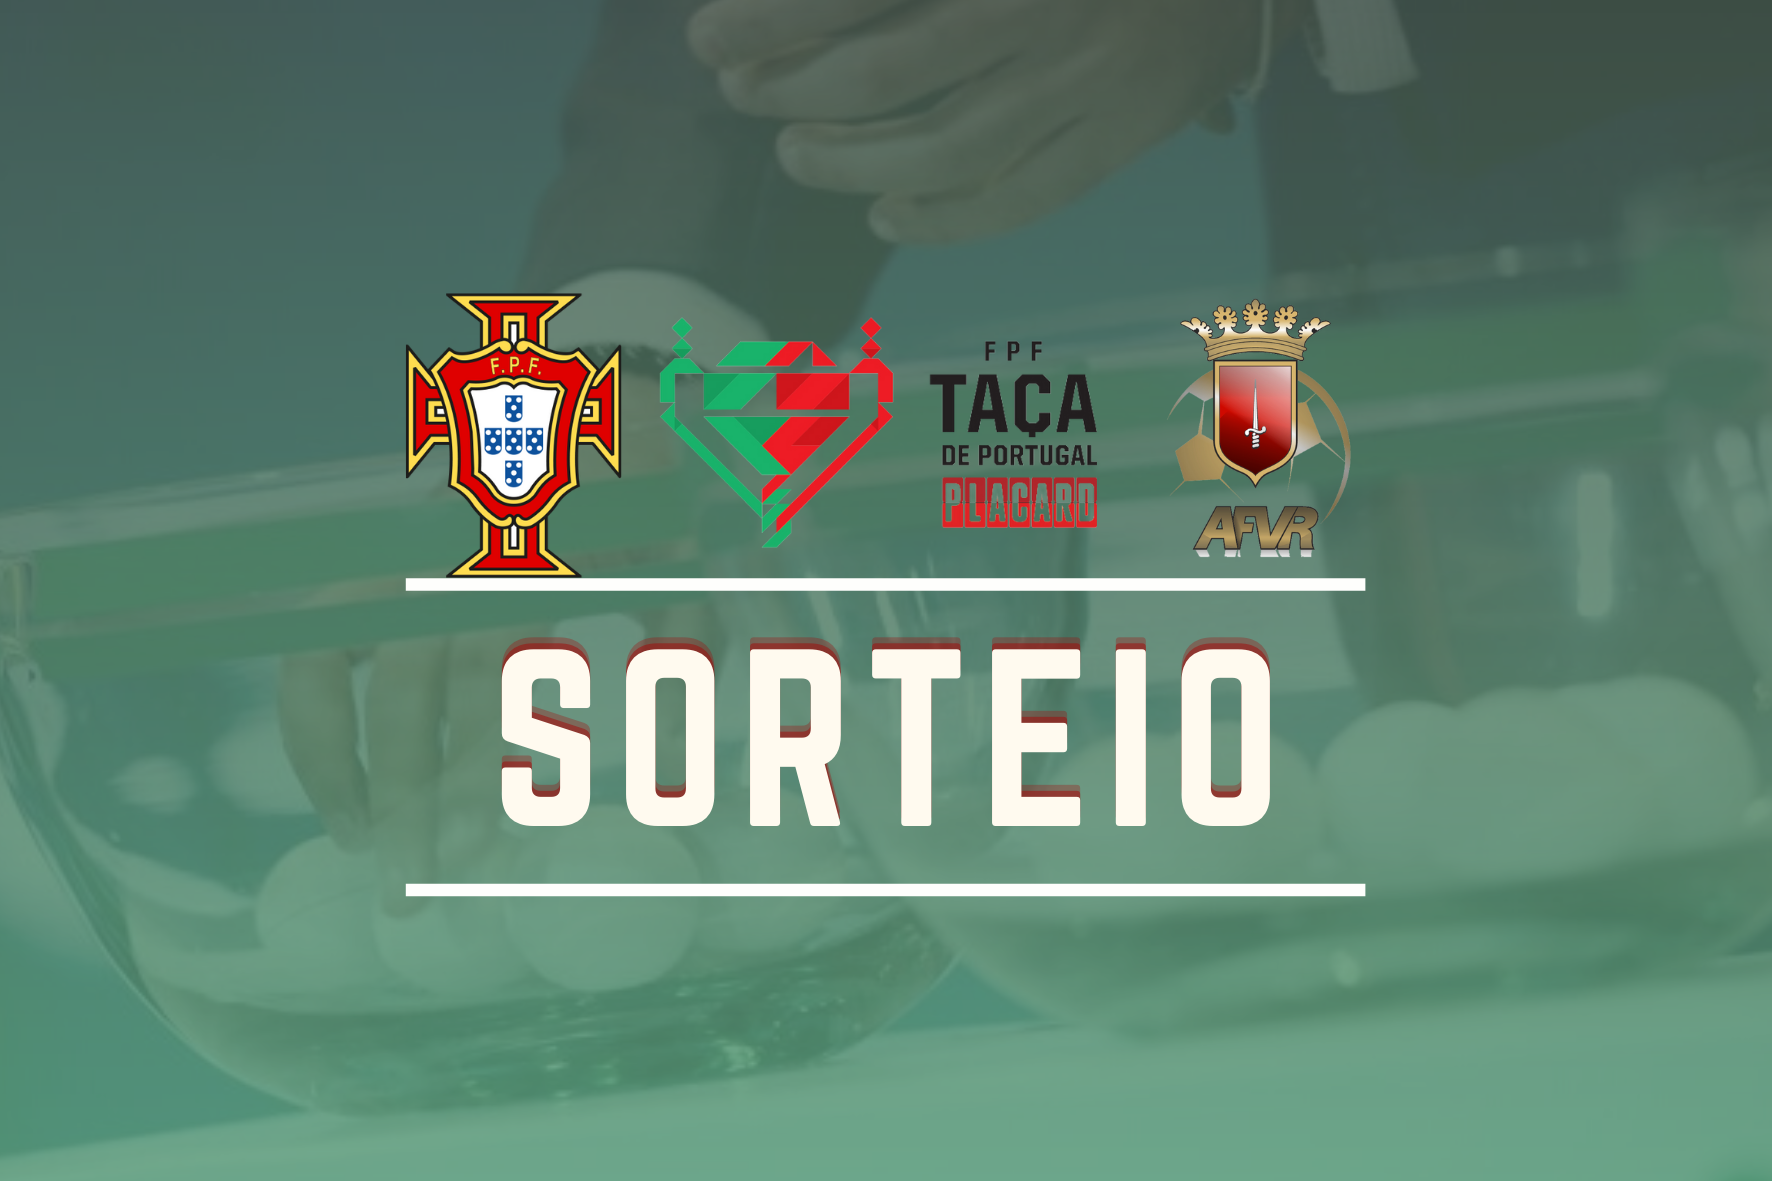 SORTEIO | TAÇA DE PORTUGAL PLACARD